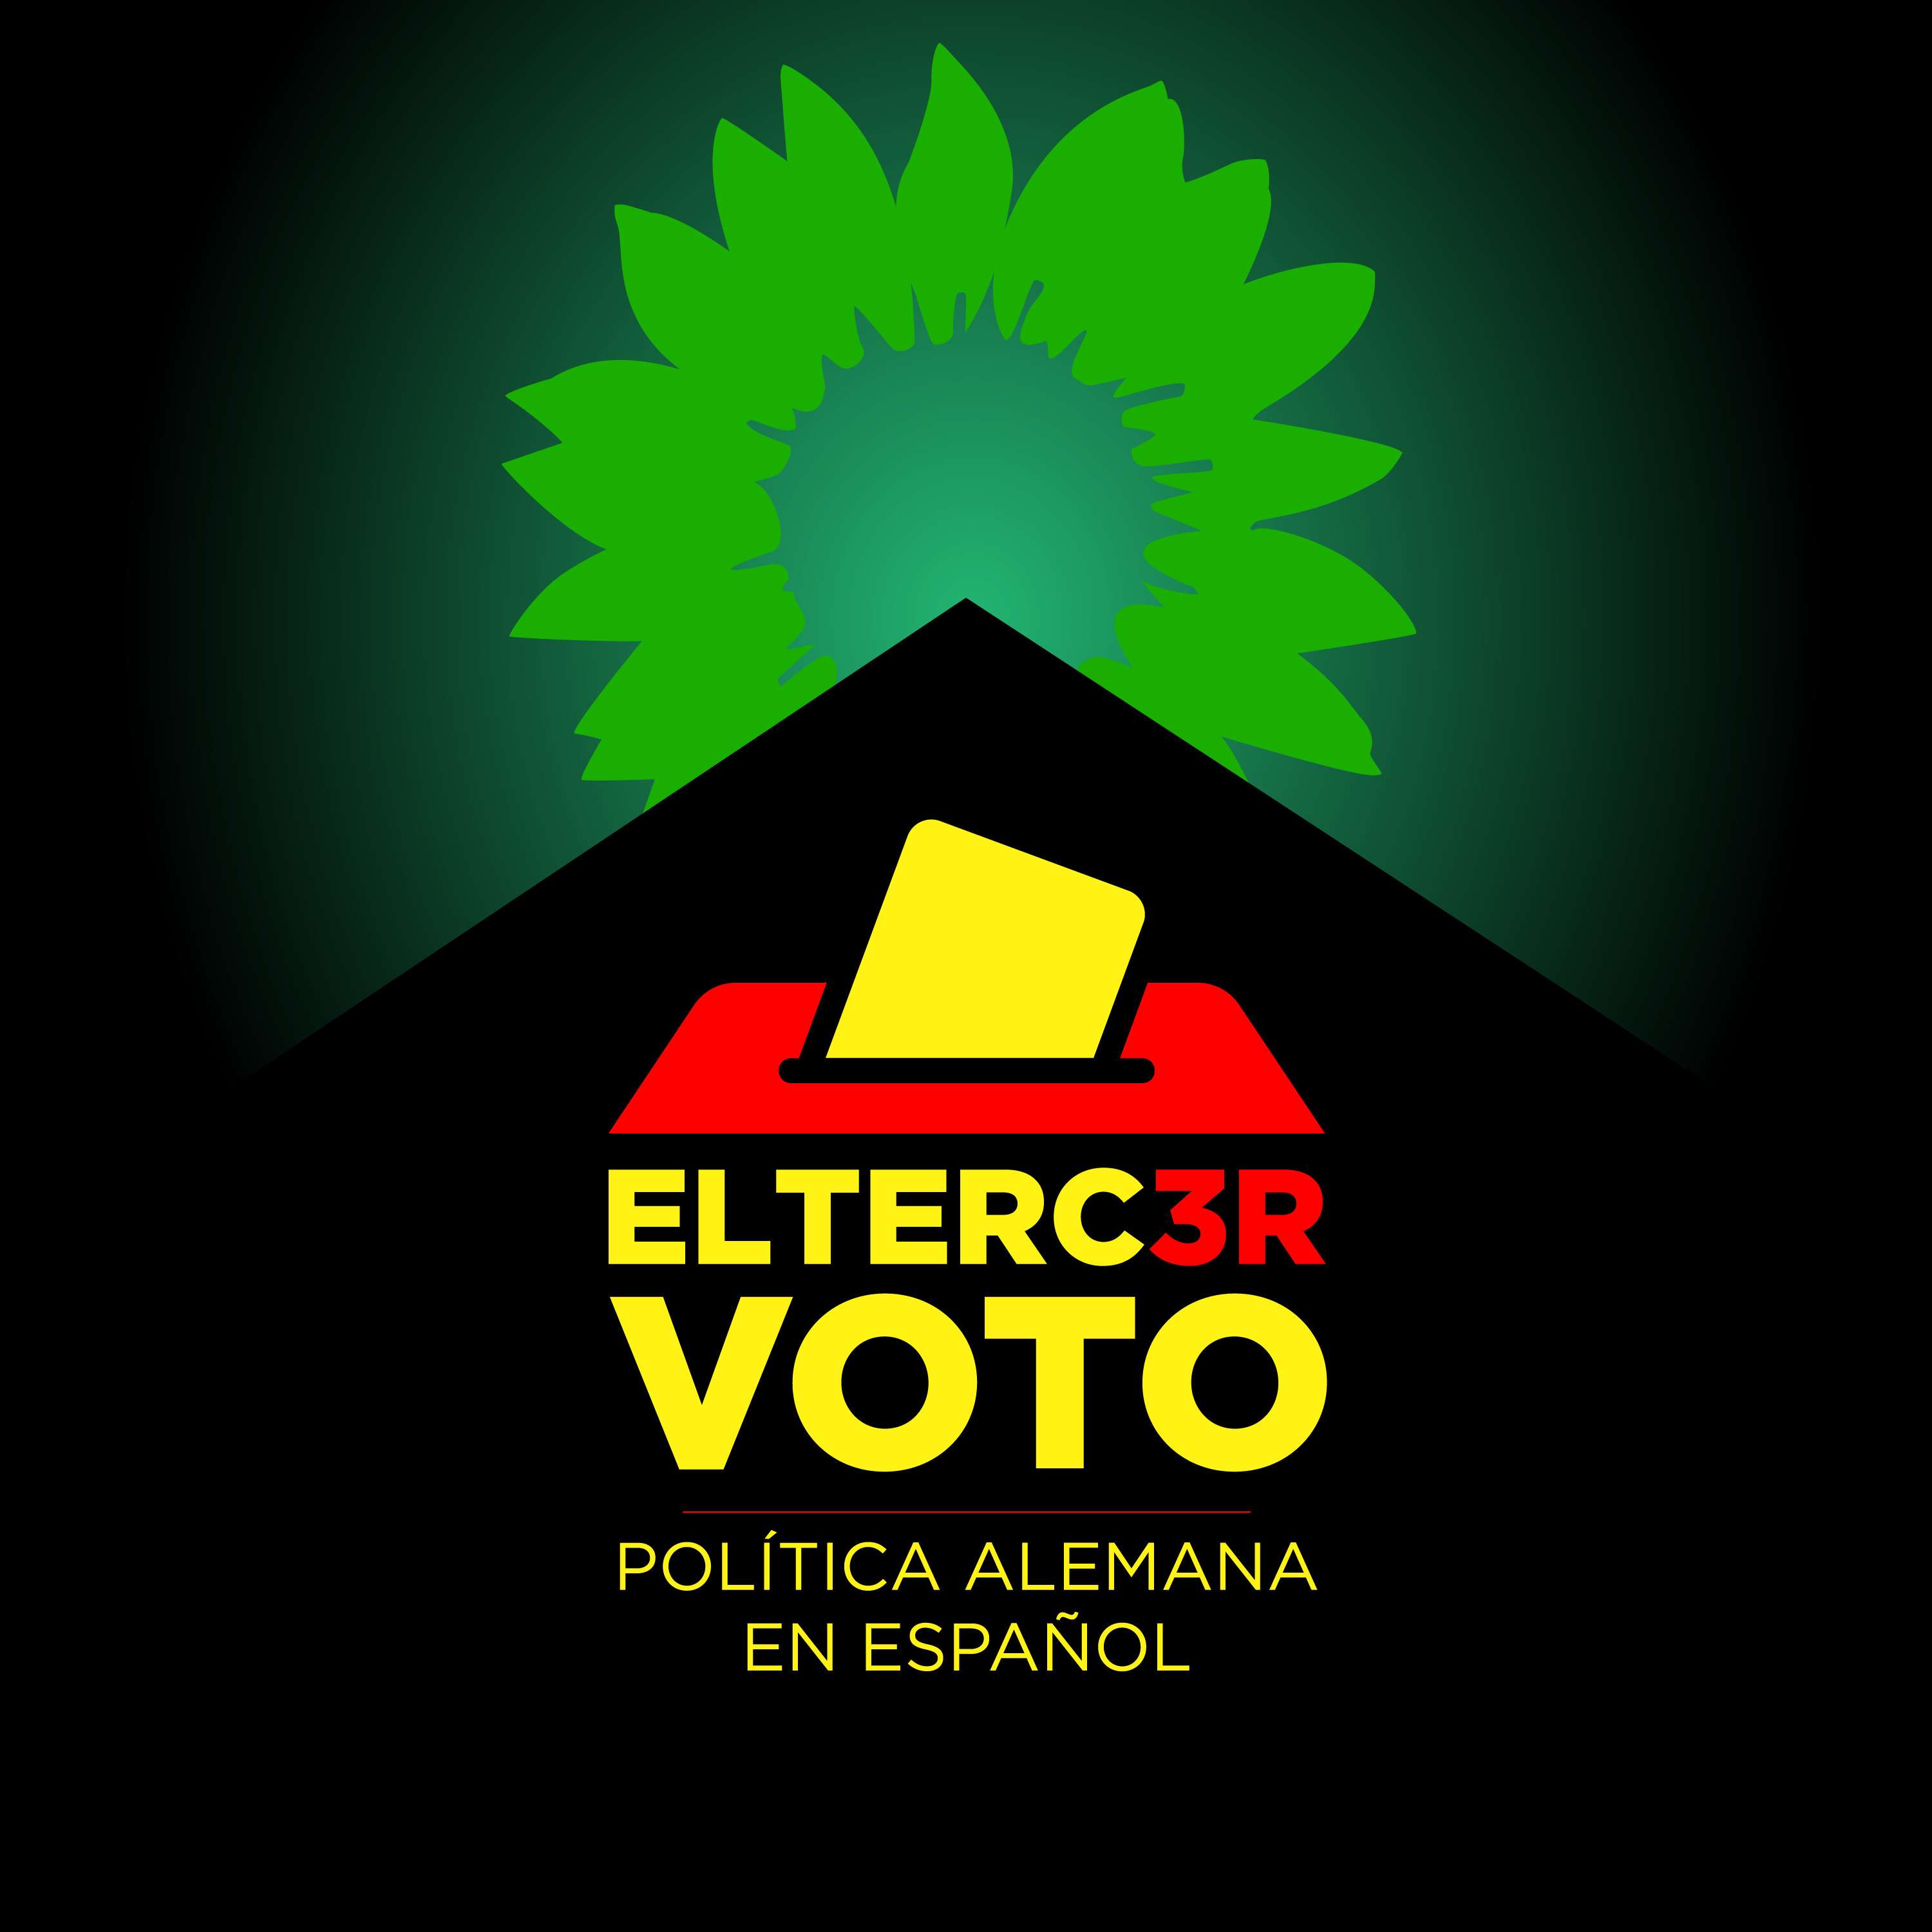 Verdes: de single-issue party a Volkspartei